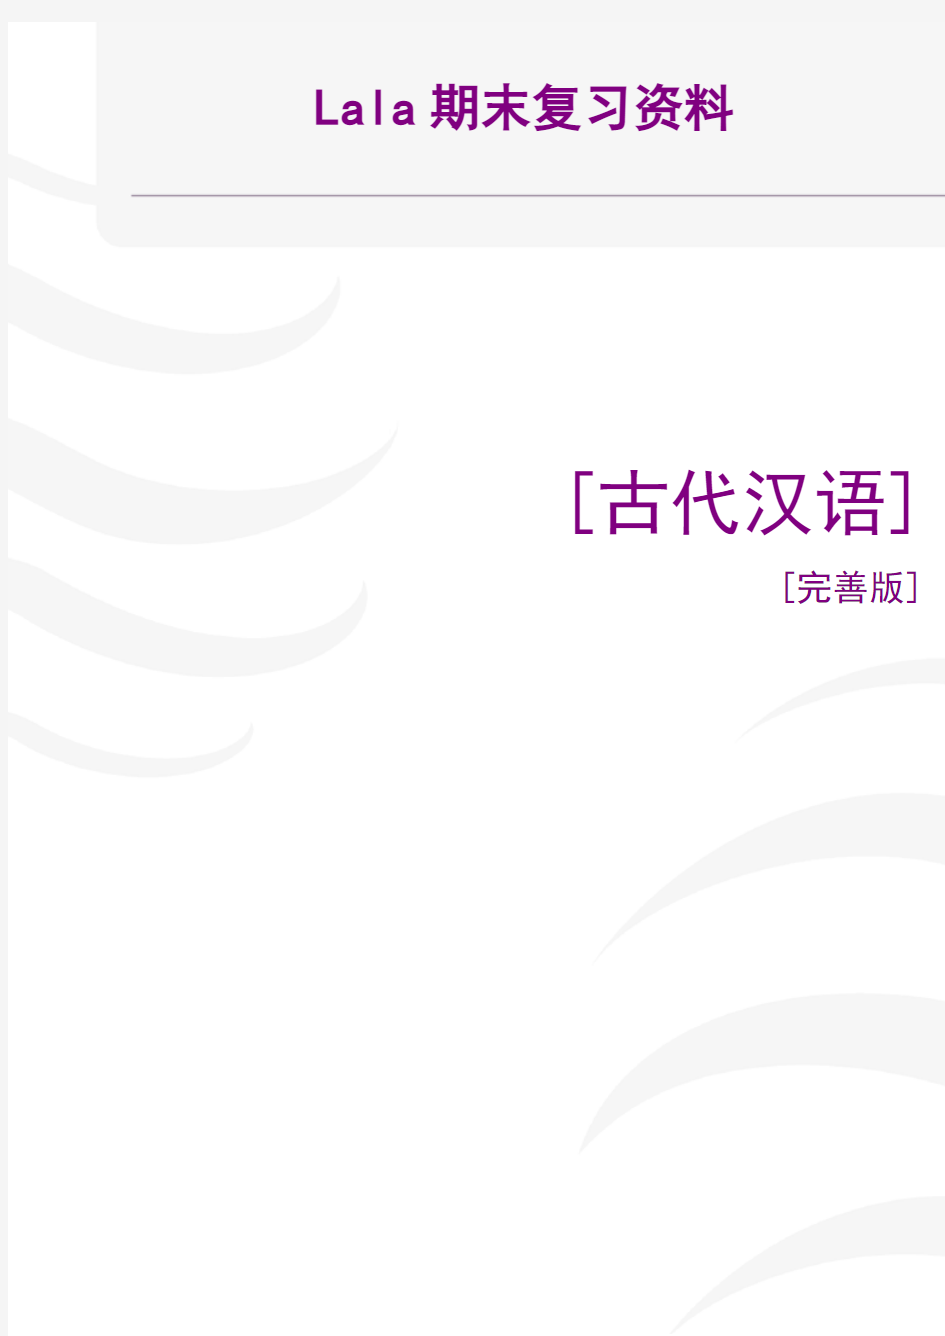 汉语言文学专业古代汉语考试大纲